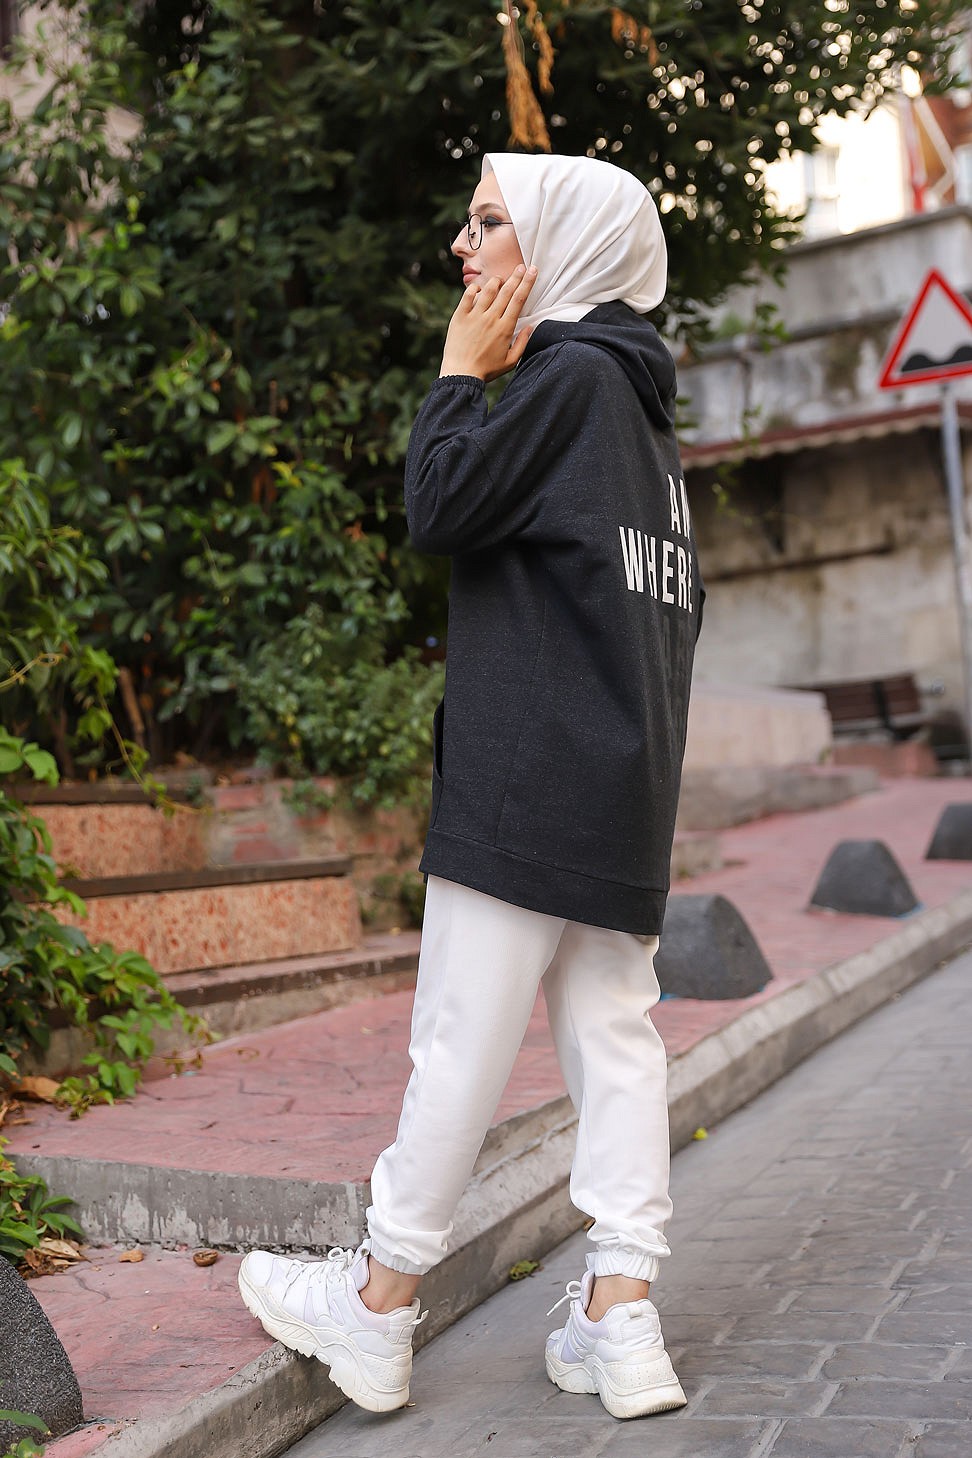 Amelis - Survêtement femme à capuche de couleur gris clair avec